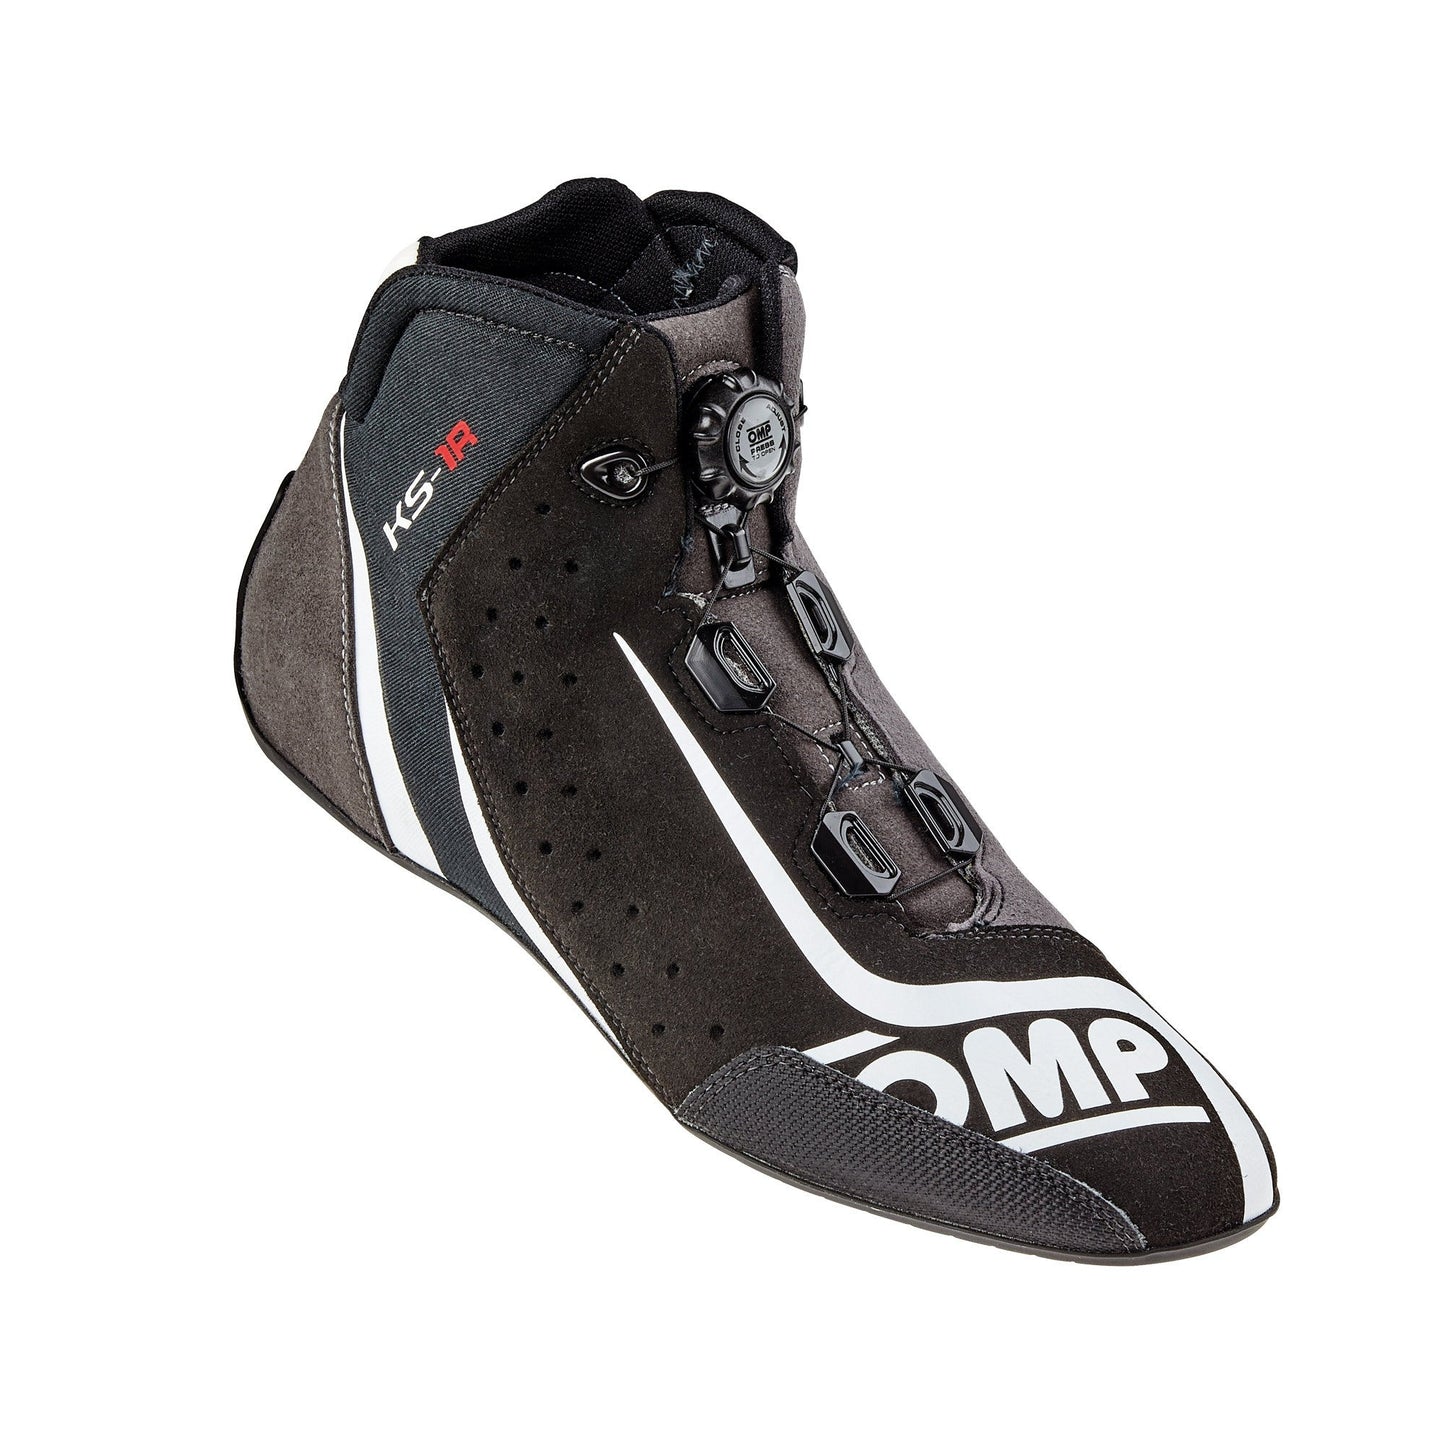 OMP-Karting Shoes-KS-1R